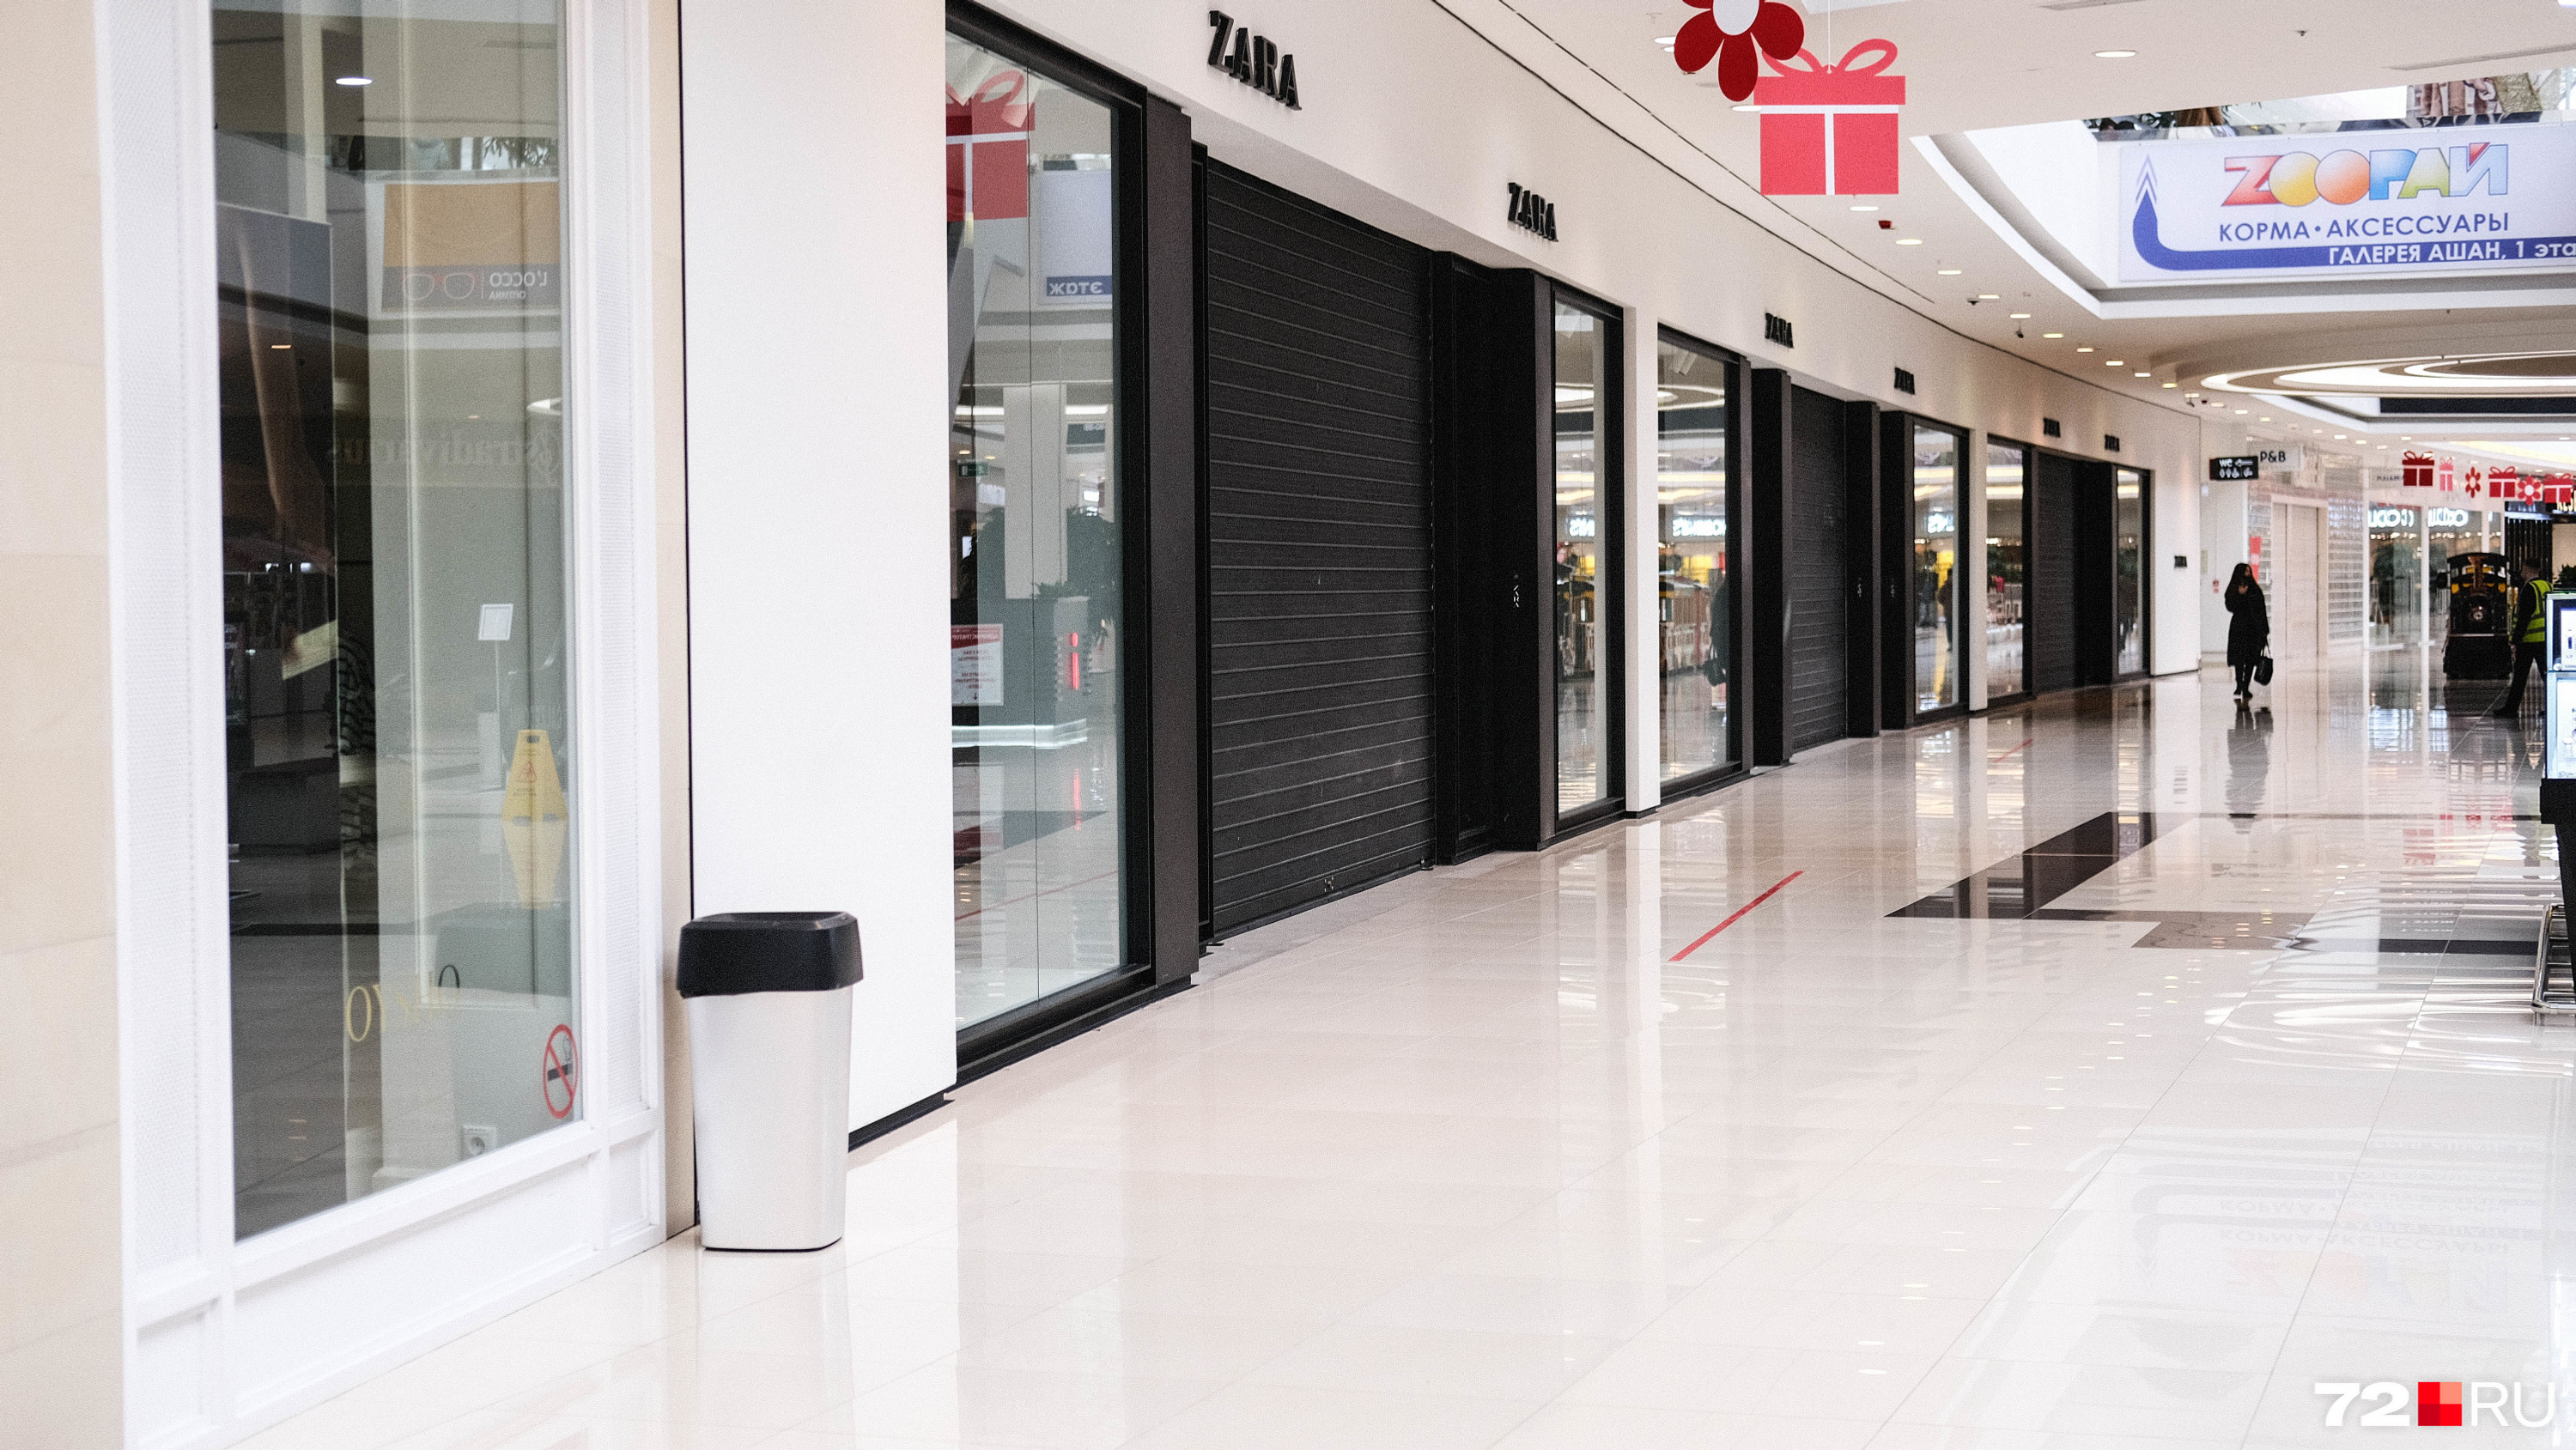 В компанию Inditex входит 8 магазинов, которые наполняли первый этаж. Без них «Кристалл» выглядит совсем безжизненно